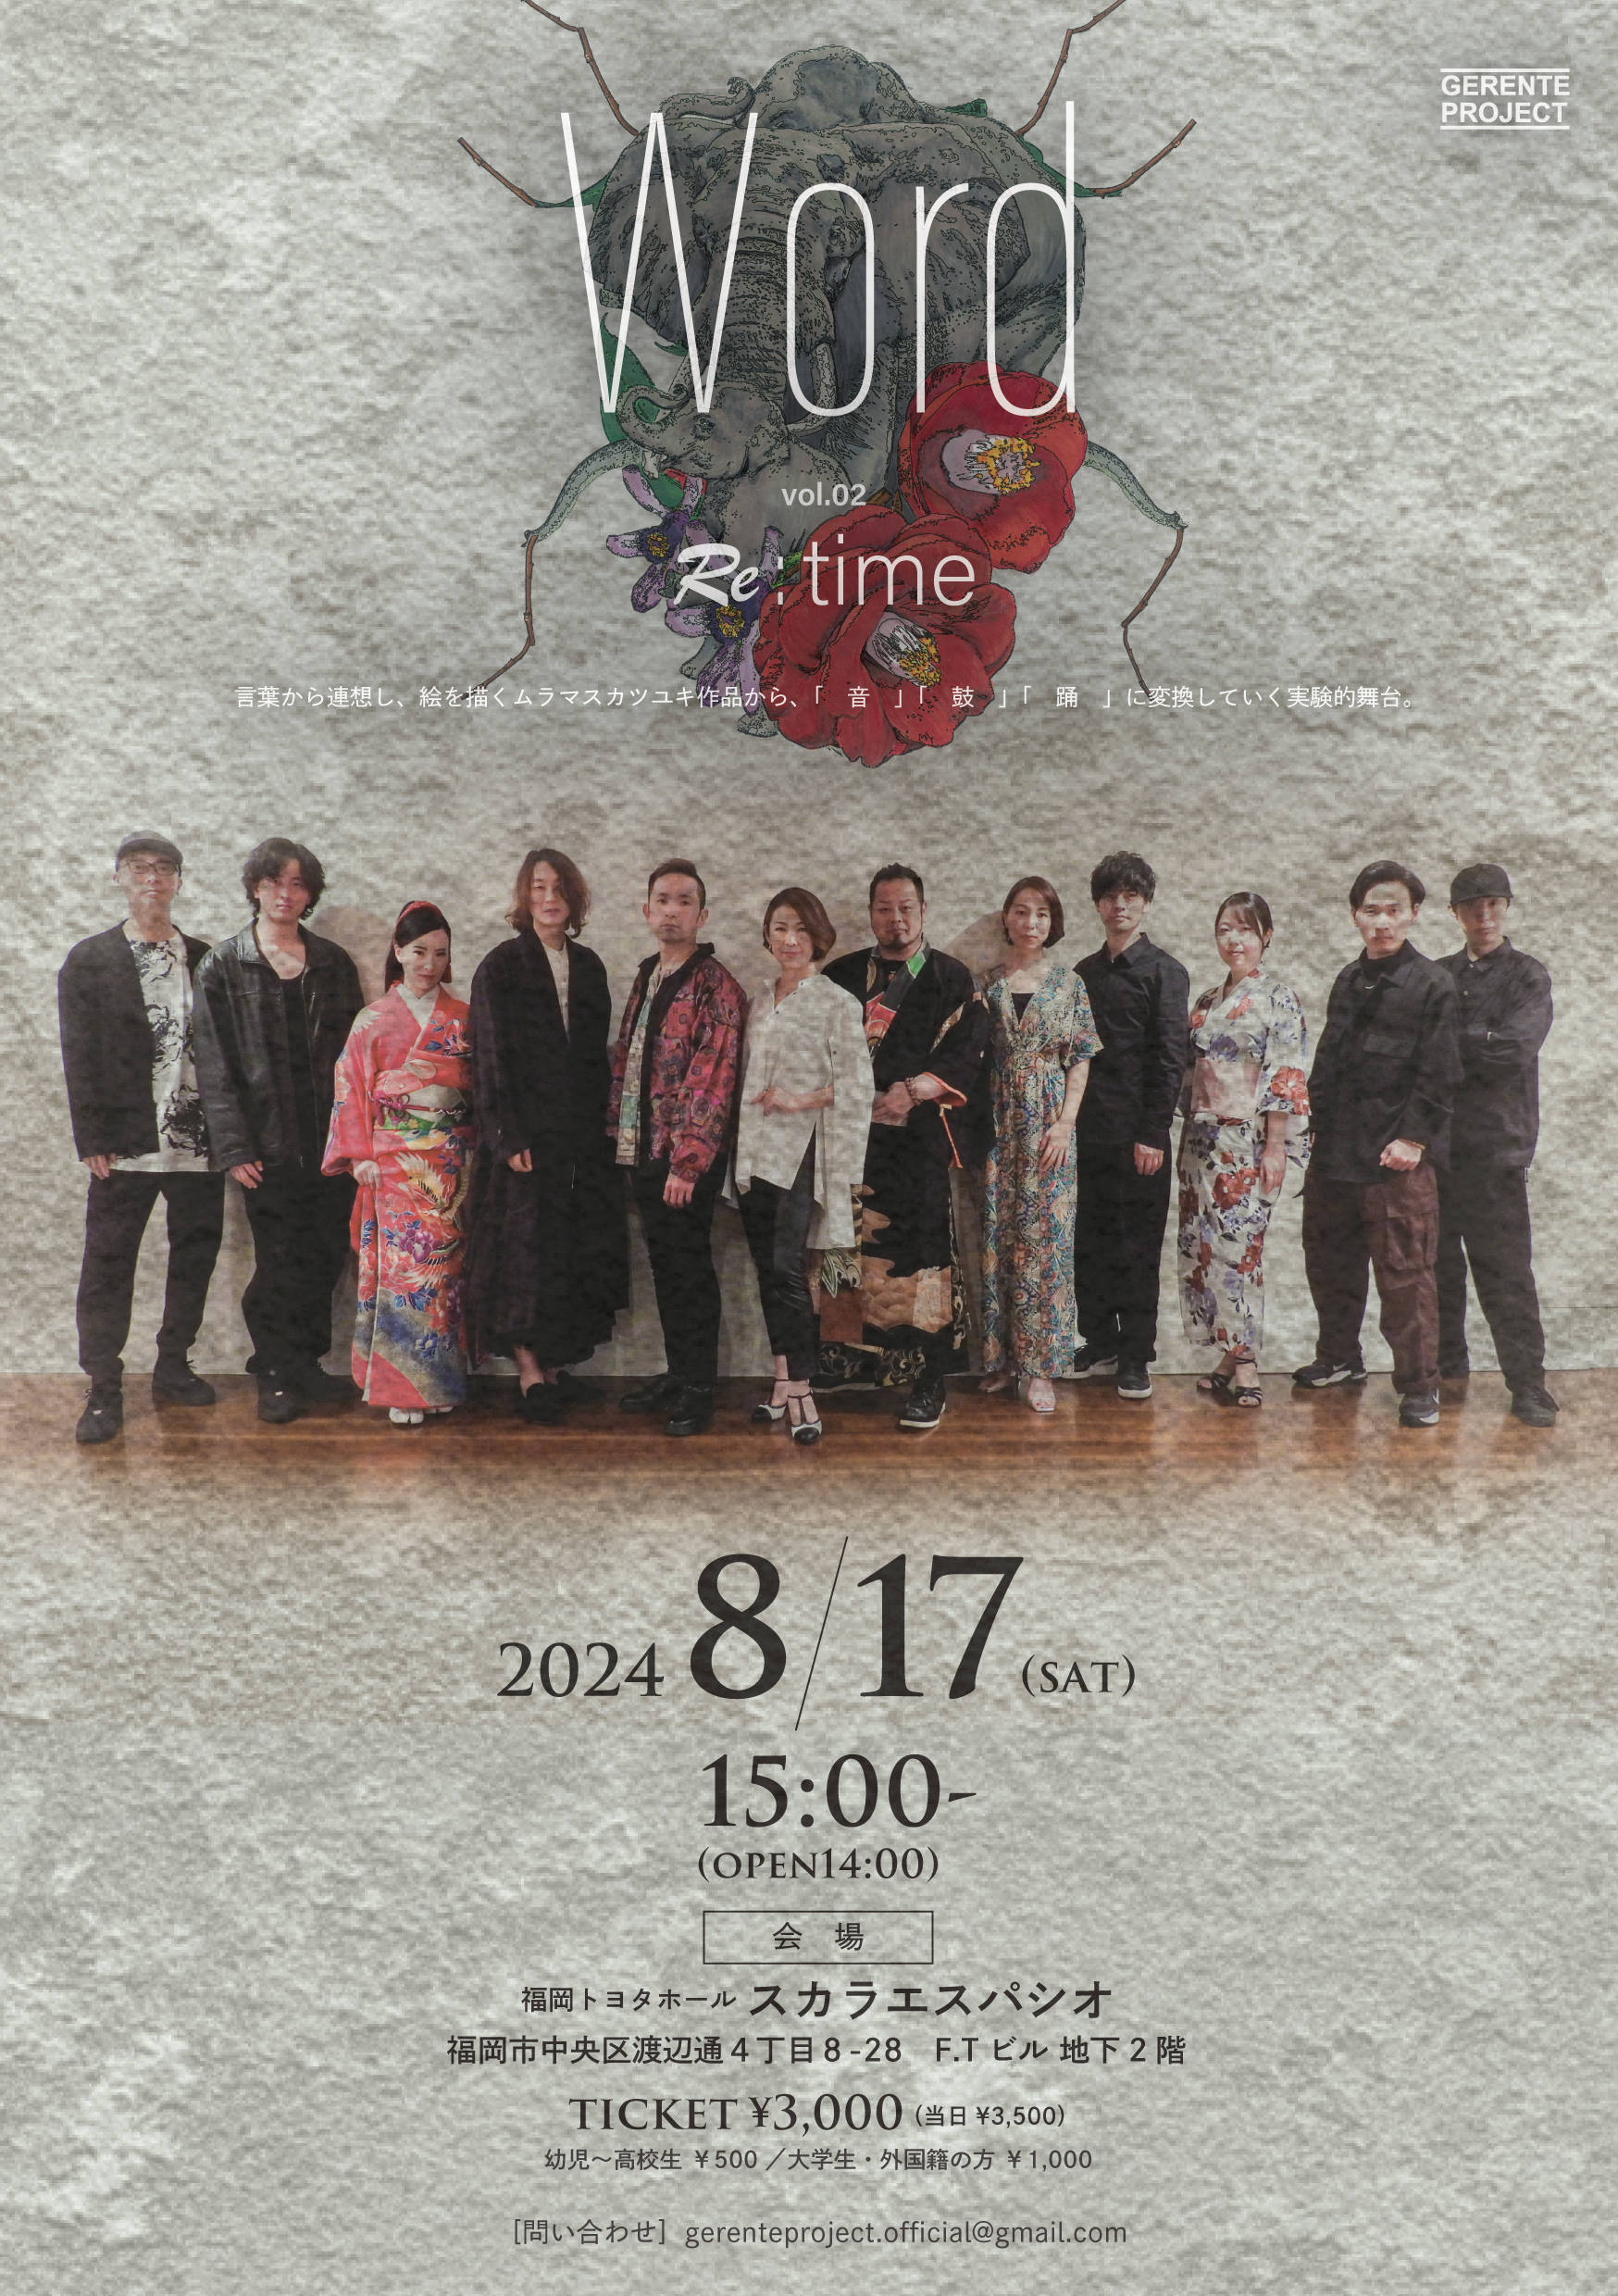 ラグレスプロテインpresents「Word vol.2 Re:time」を
福岡トヨタホール スカラエスパシオにて8月17日に開催！